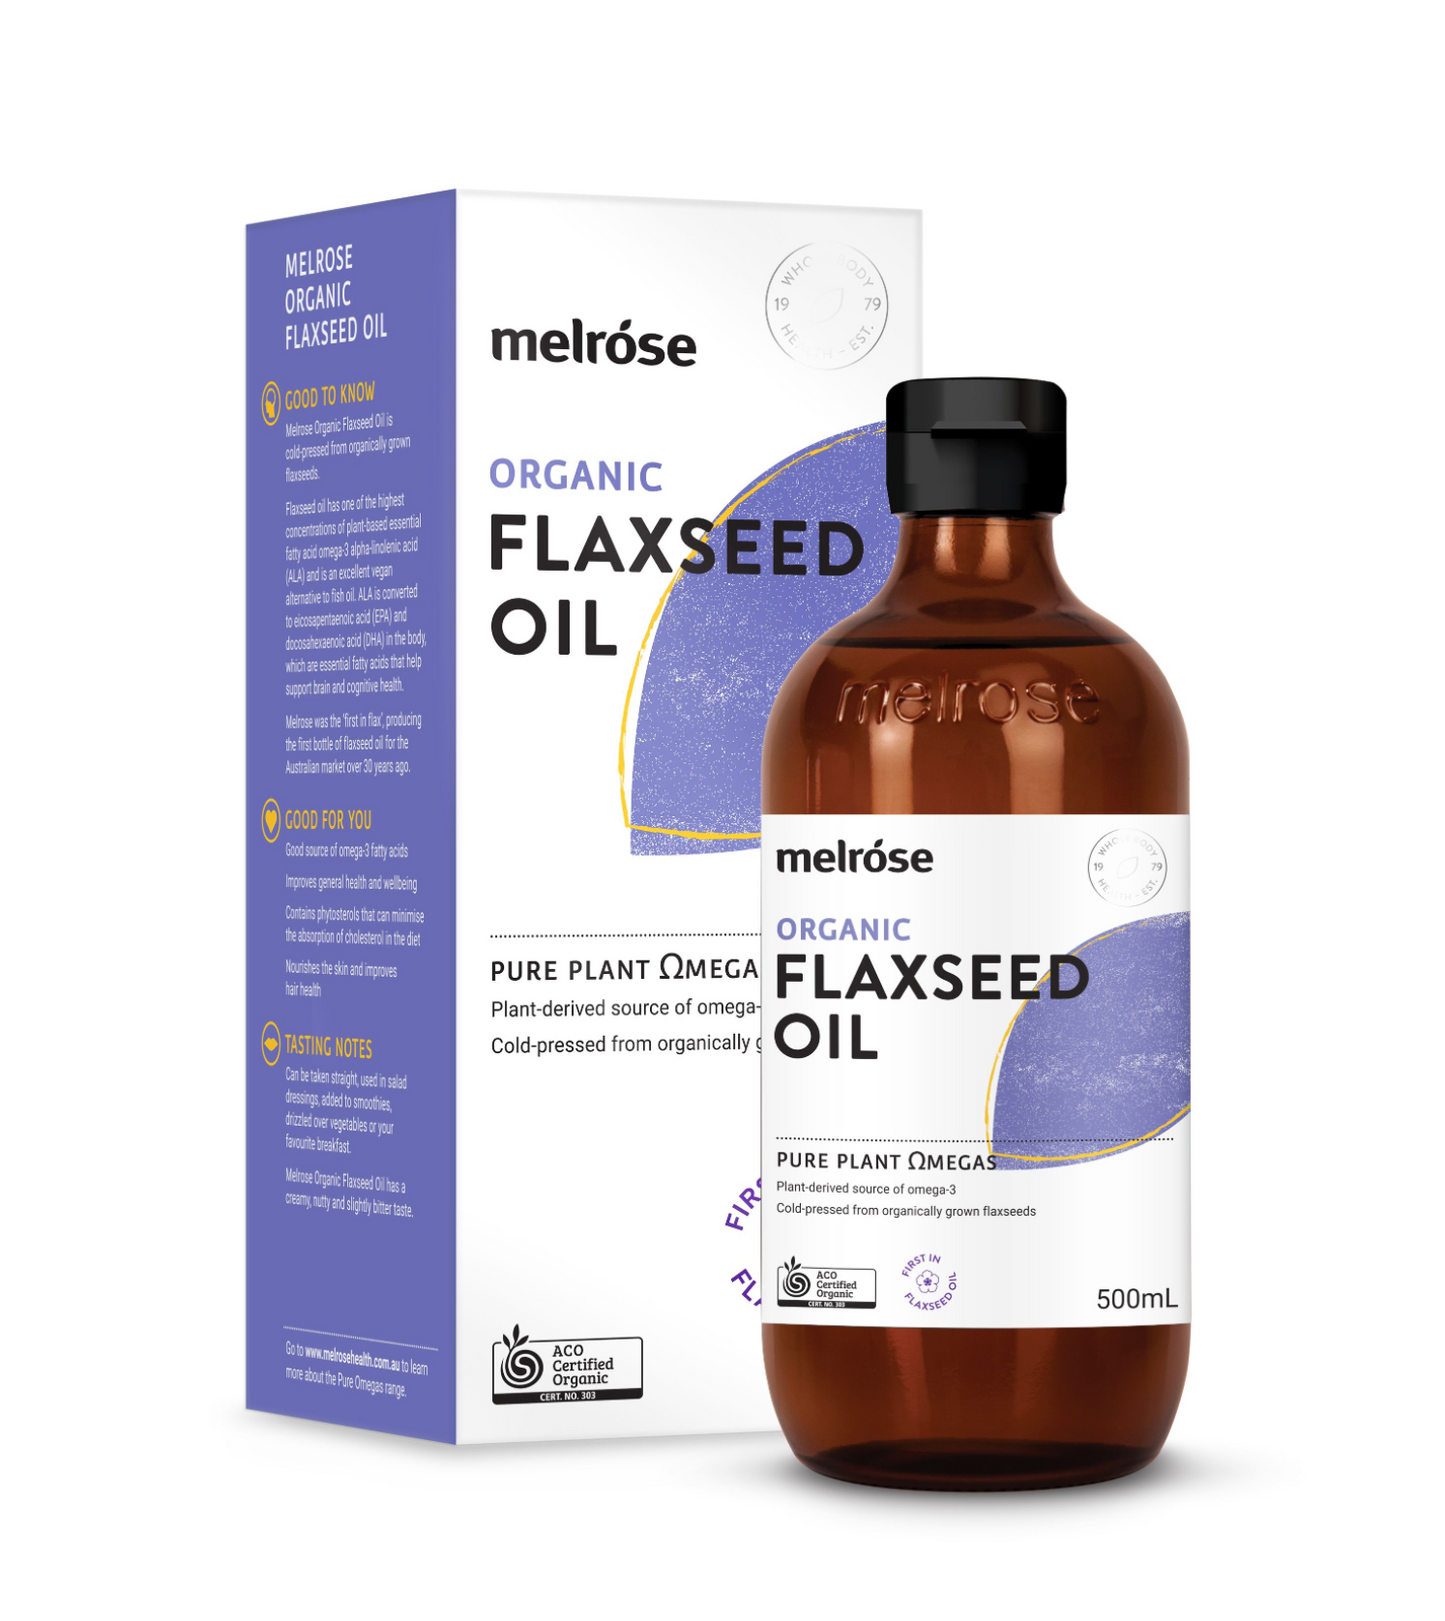 Melrose Organic Flaxseed Oil 200ml Or 500ml, Certified Organic